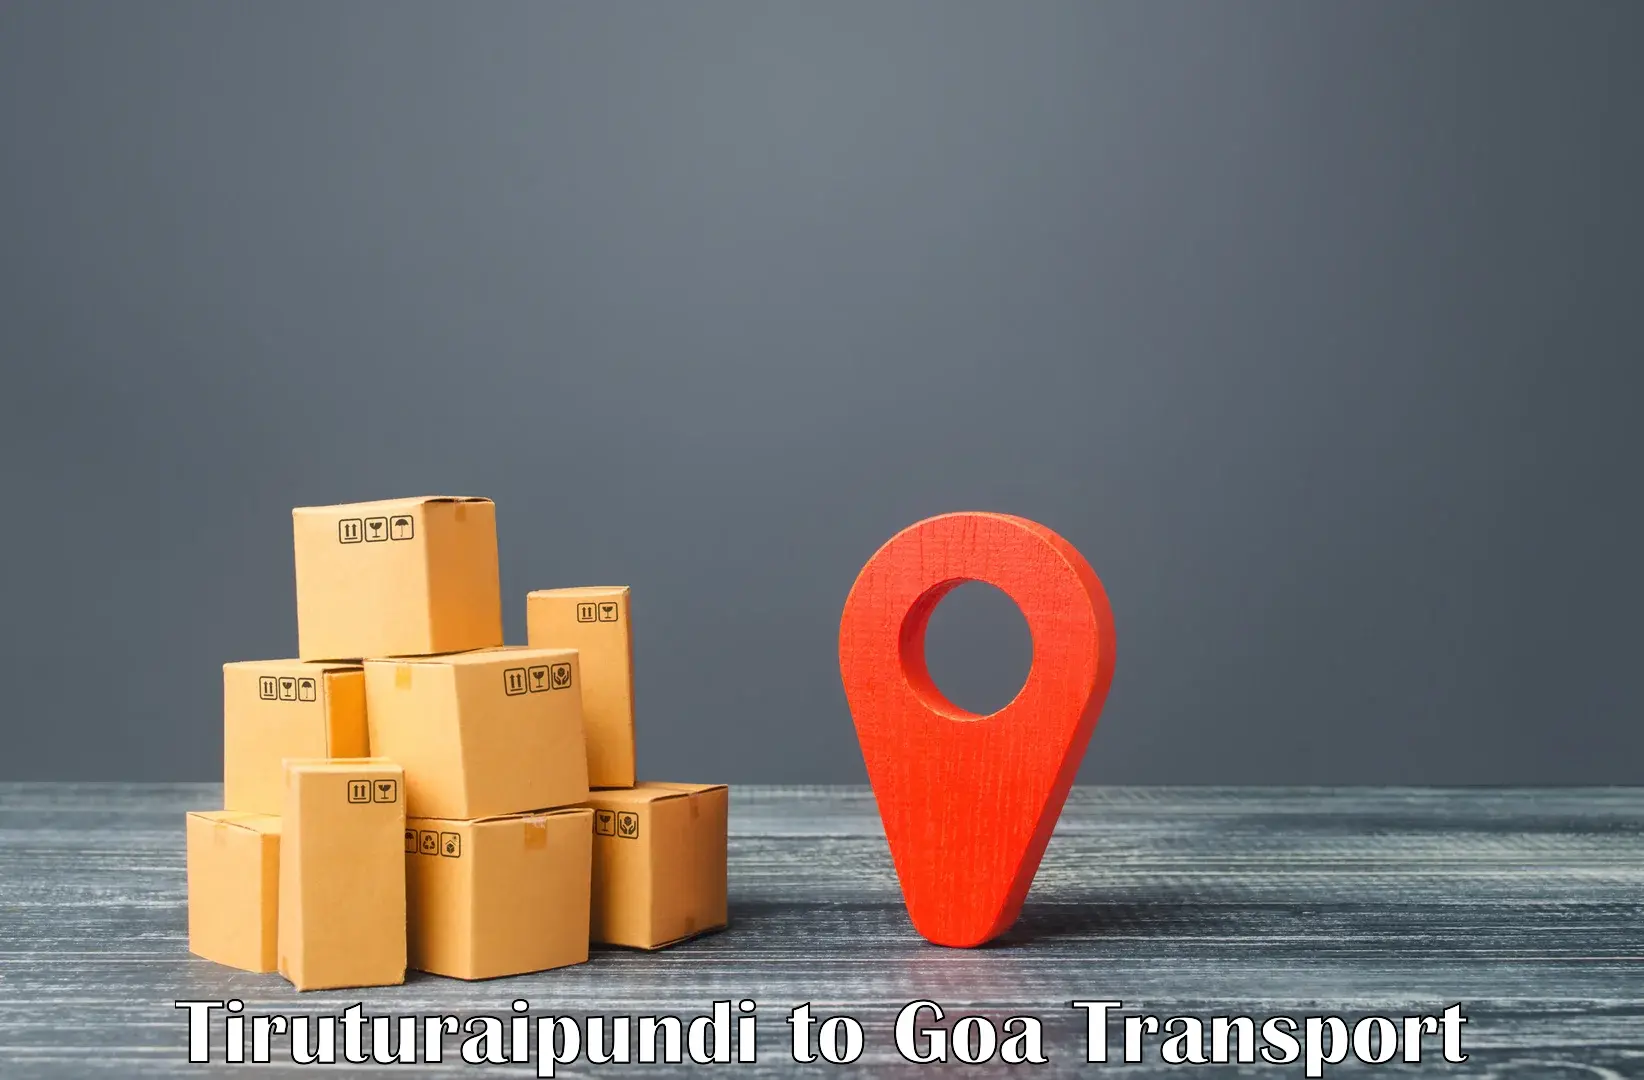 Door to door transport services in Tiruturaipundi to Goa